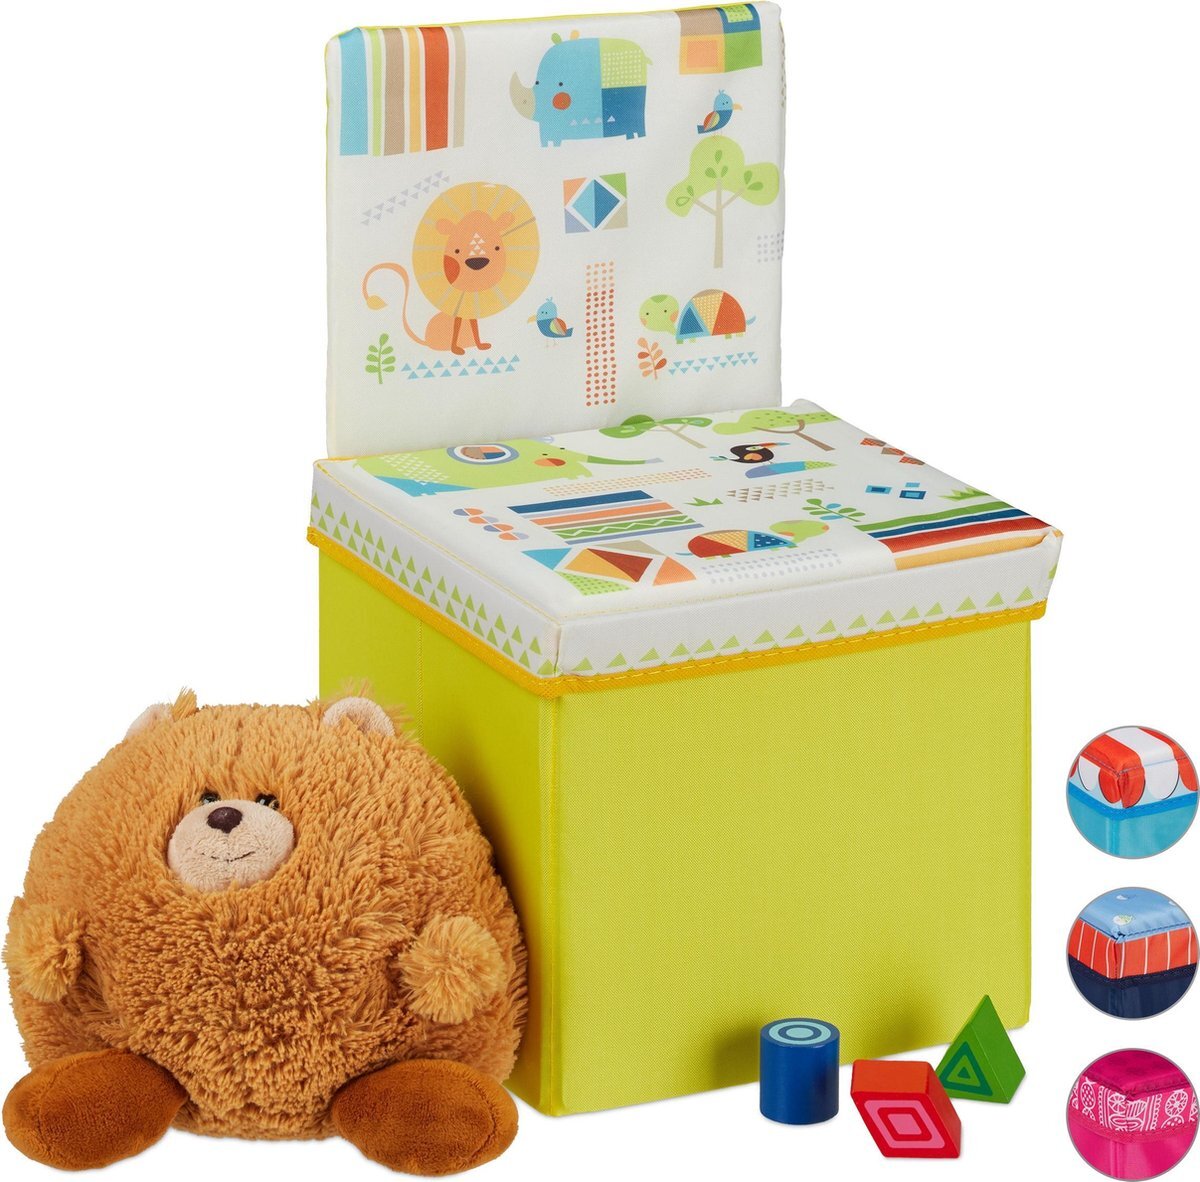 Relaxdays opbergbox - opvouwbaar - kinderen - speelgoedkist - poef - hocker - opbergruimte Dieren geel